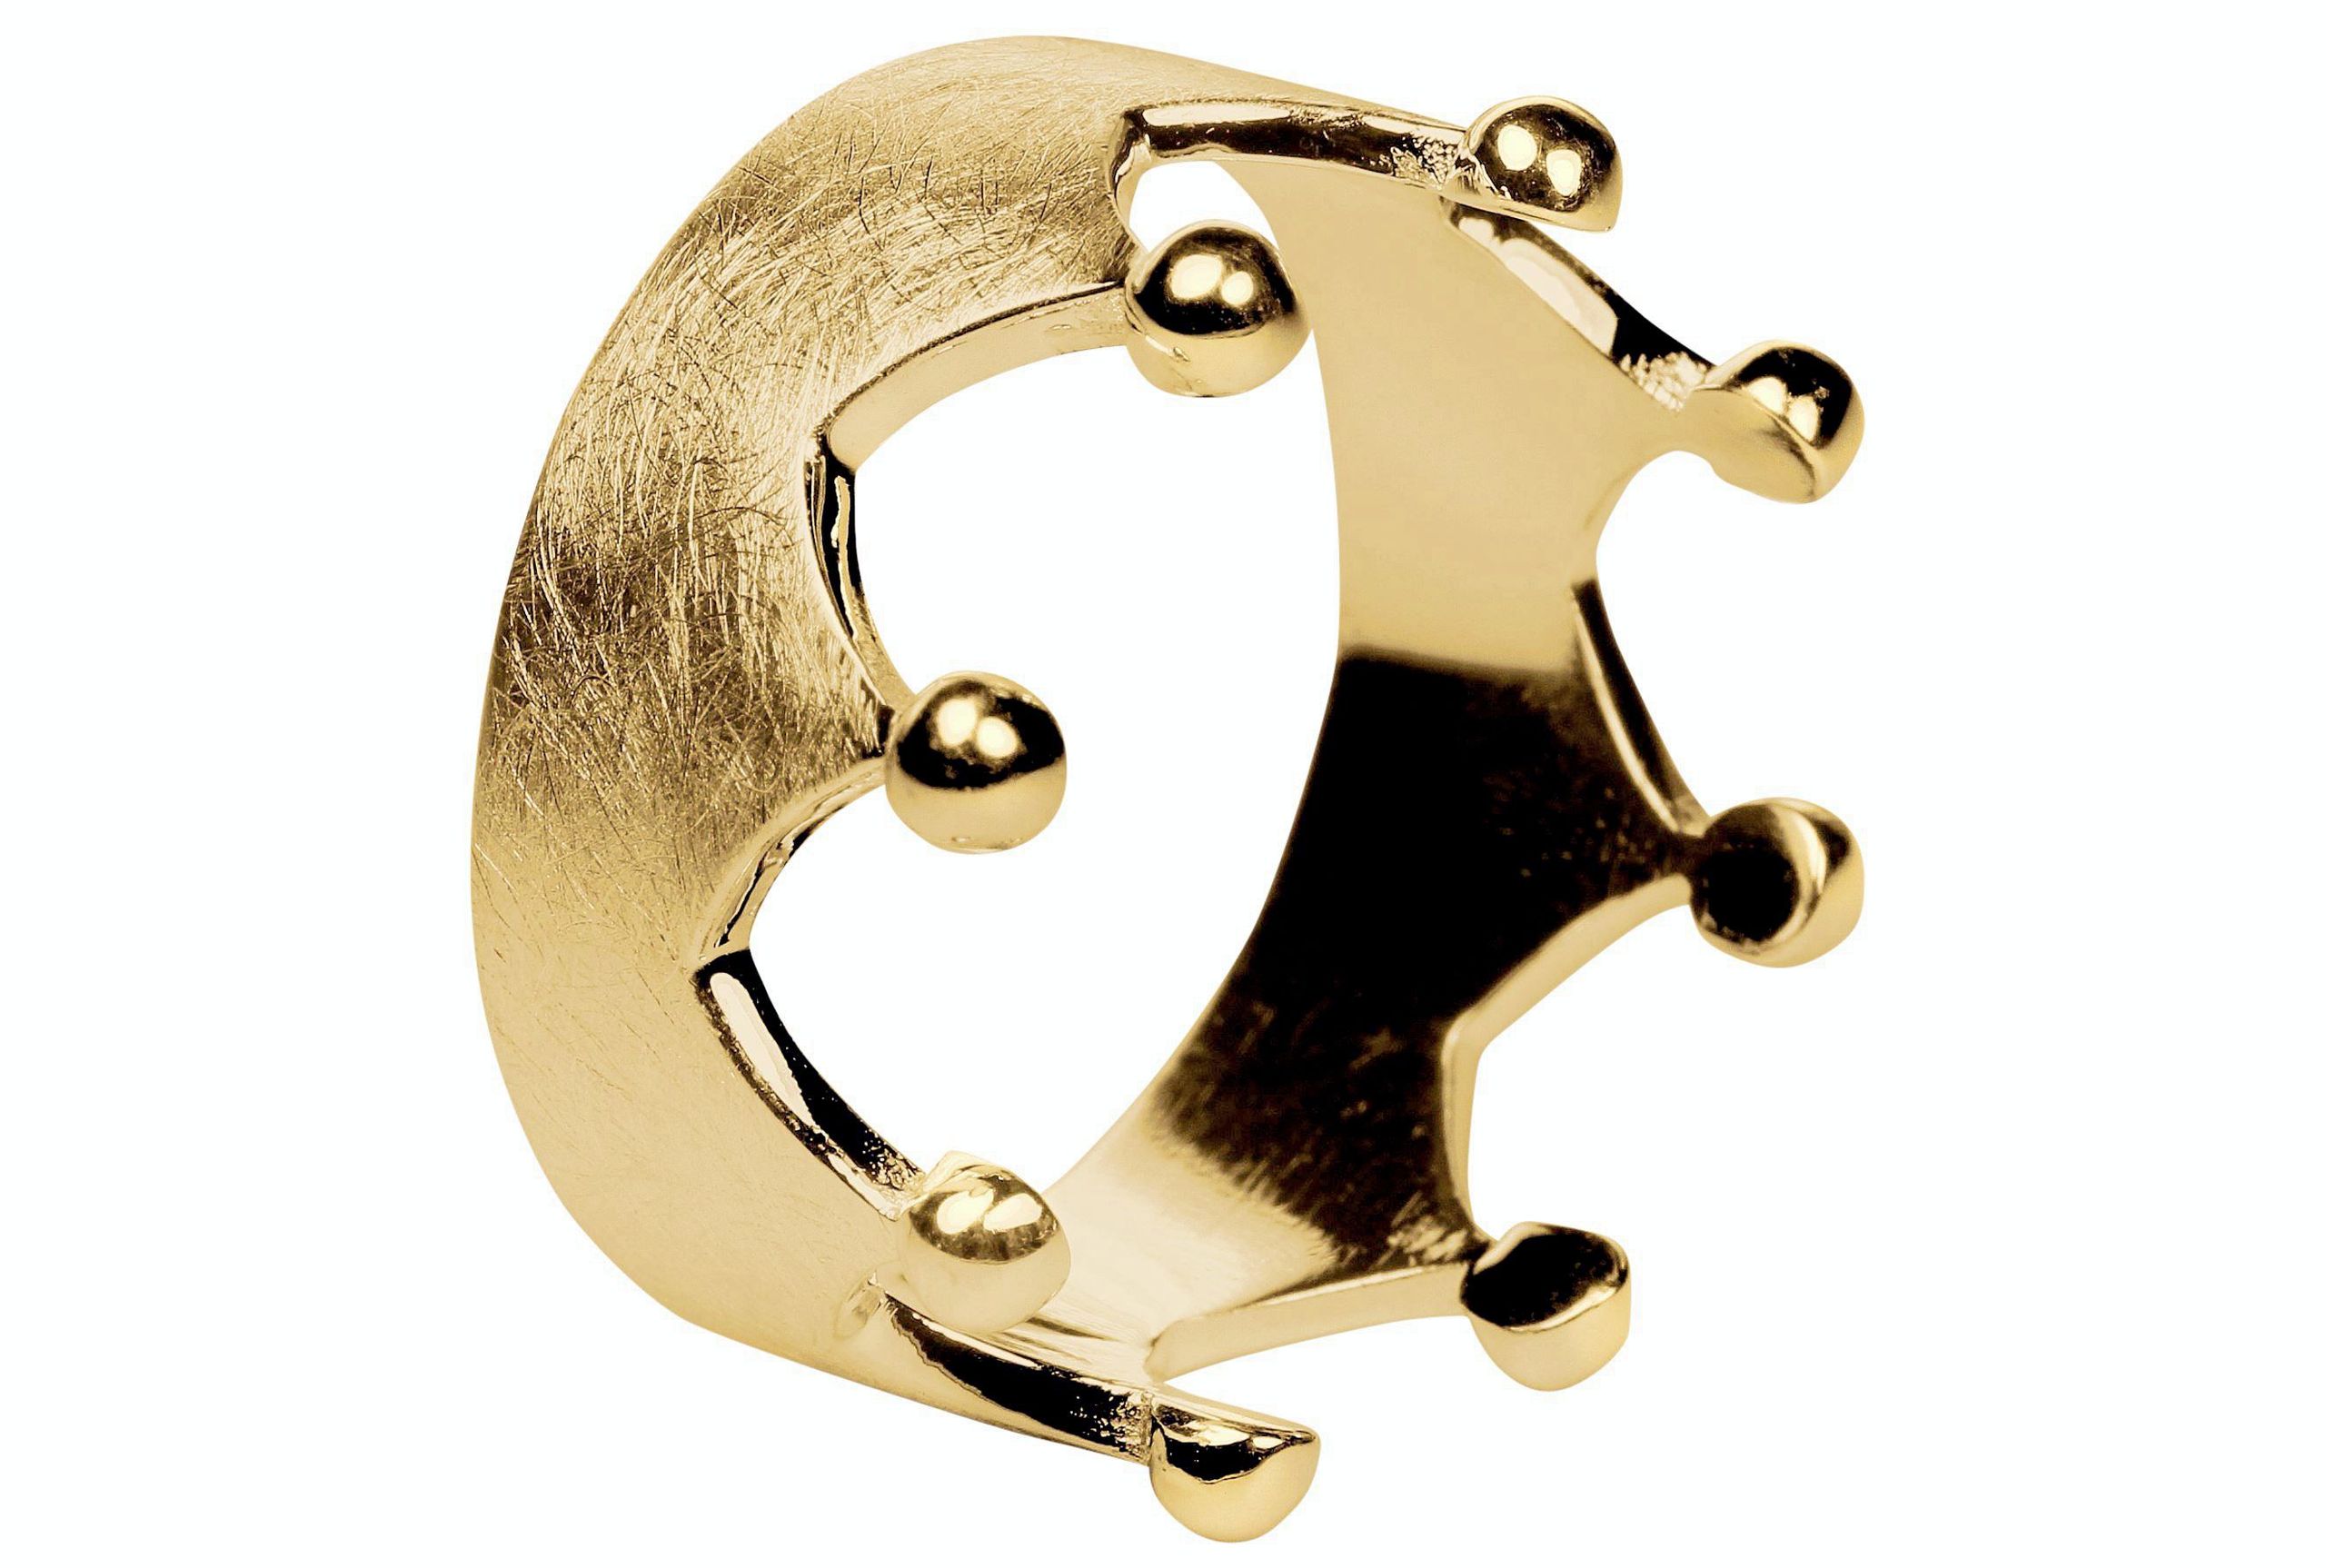 Ein Kronenring in den Größen 64 bis 70 mit acht Zacken und acht Kügelchen an der Spitze, gefertigt aus Silber und mit Gold plattiert.